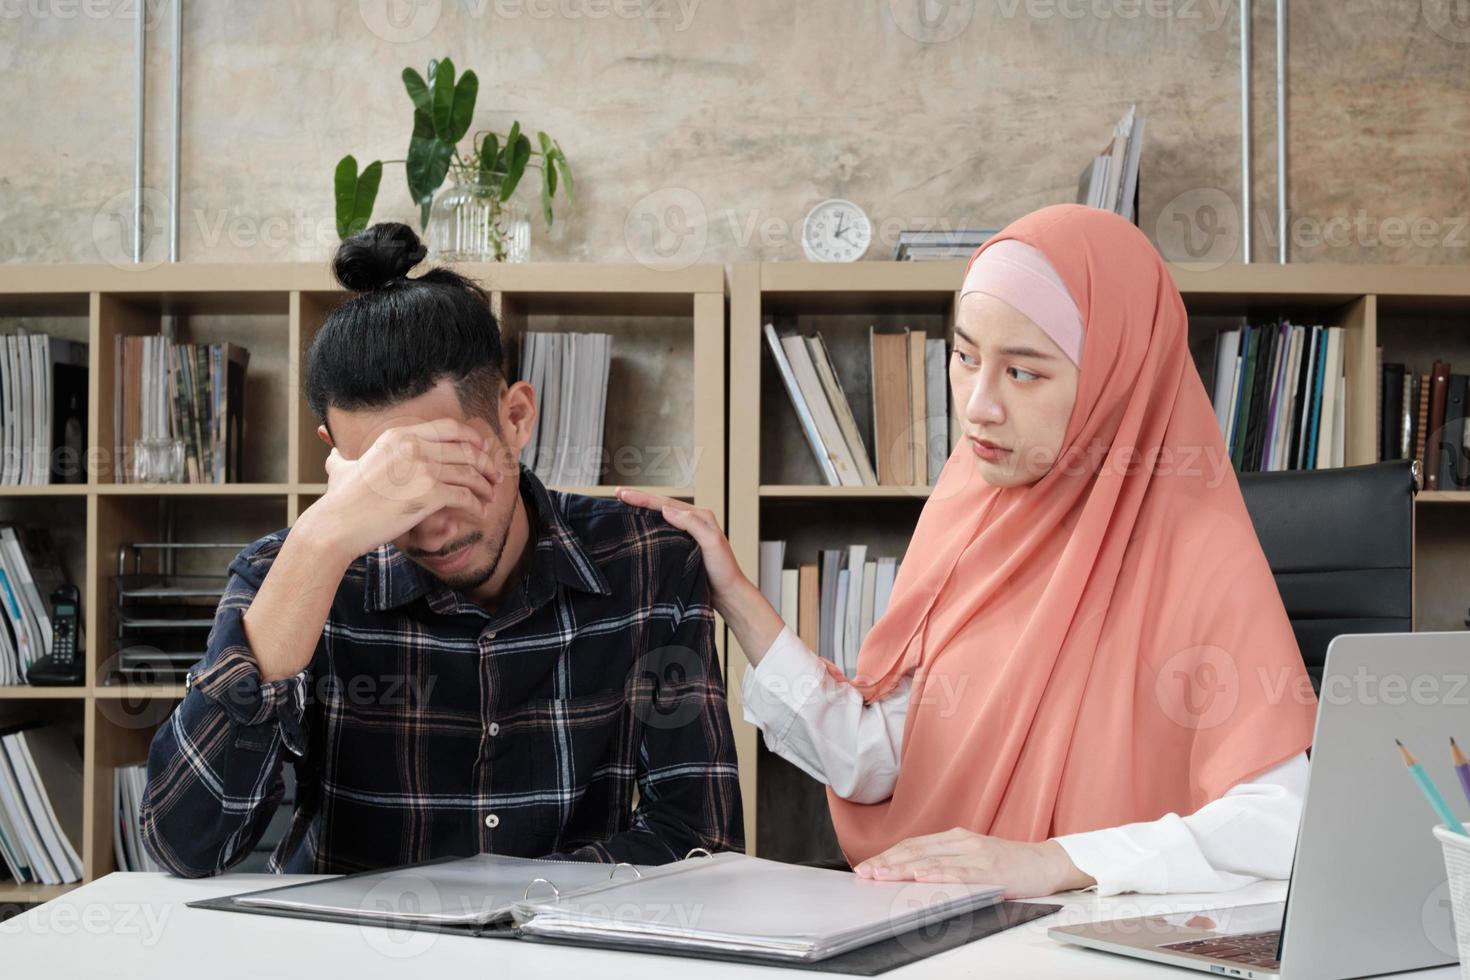 een jonge vrouwelijke startende werkpartner die een islamitisch persoon is, moedigt en troost een mannelijke collega aan om verdrietig en gestrest te zijn op de kleine werkplek, het e-commerce-bedrijfskantoor. foto